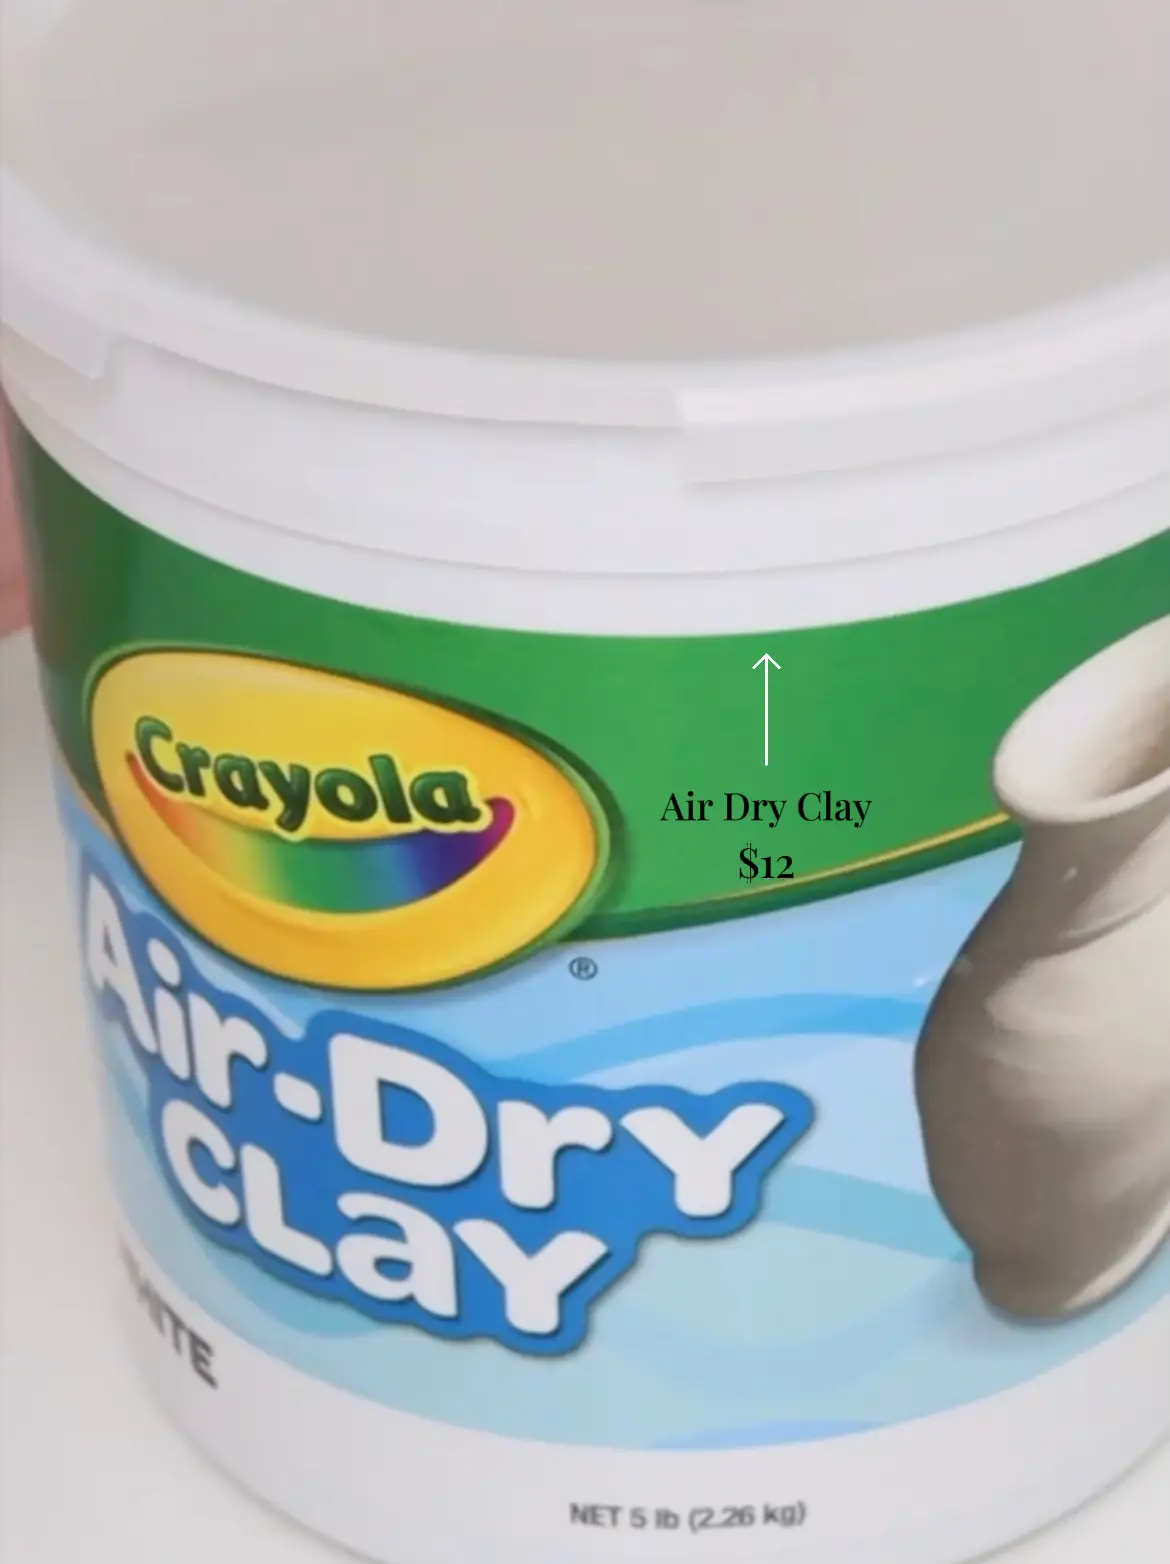 Air-Dry Clay, White, 5 Lbs 